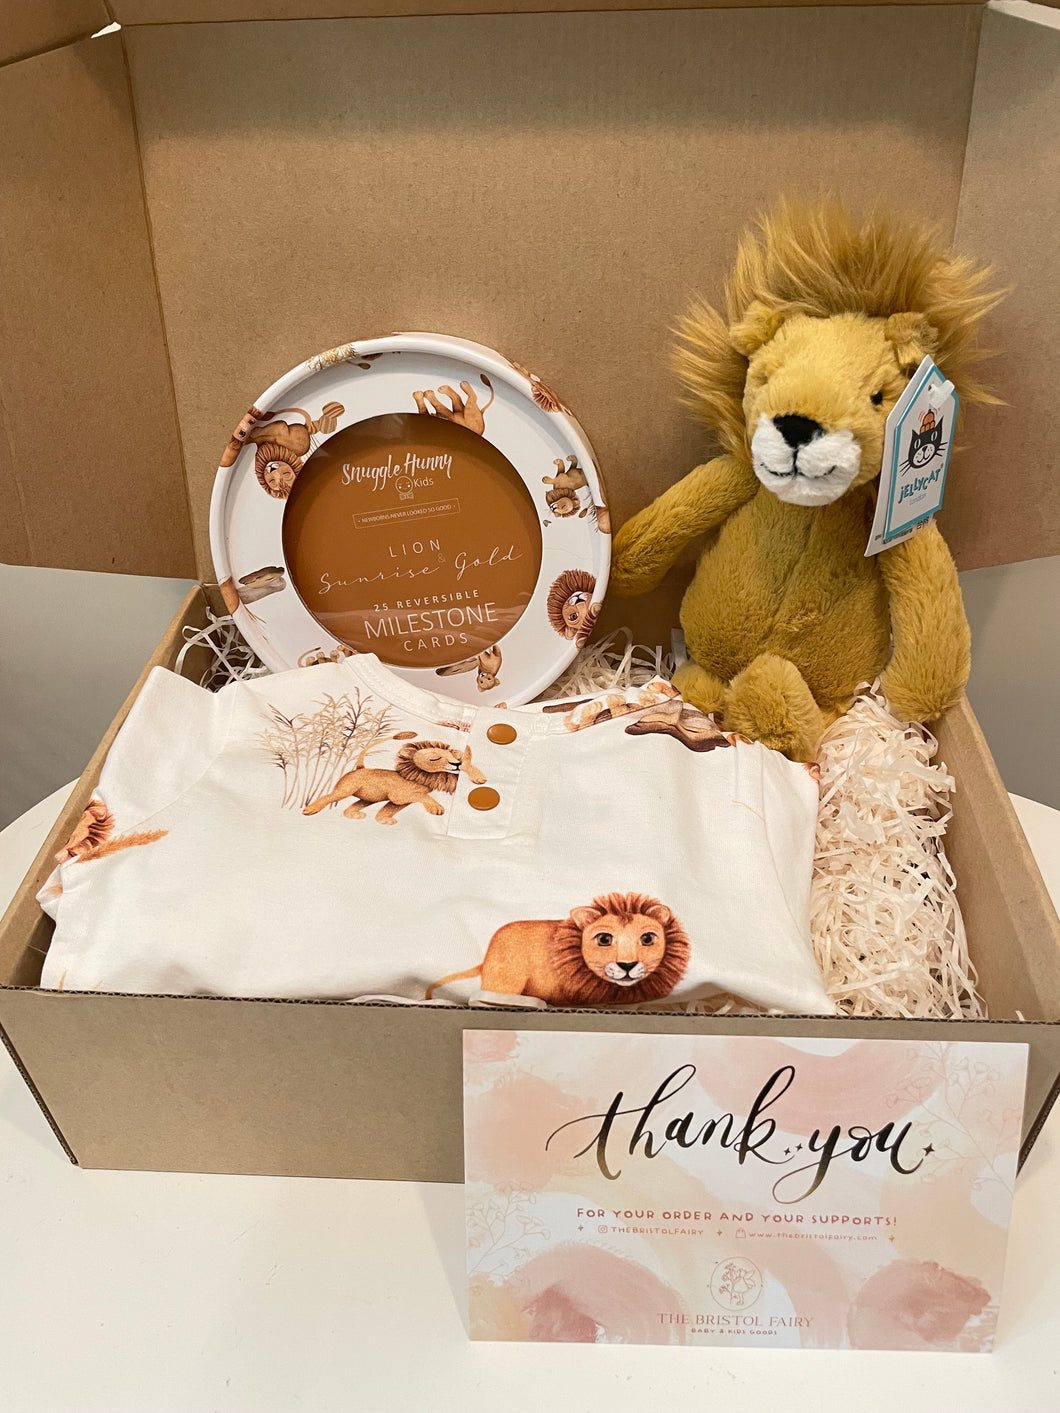 Lion Sunrise Gift Box Set